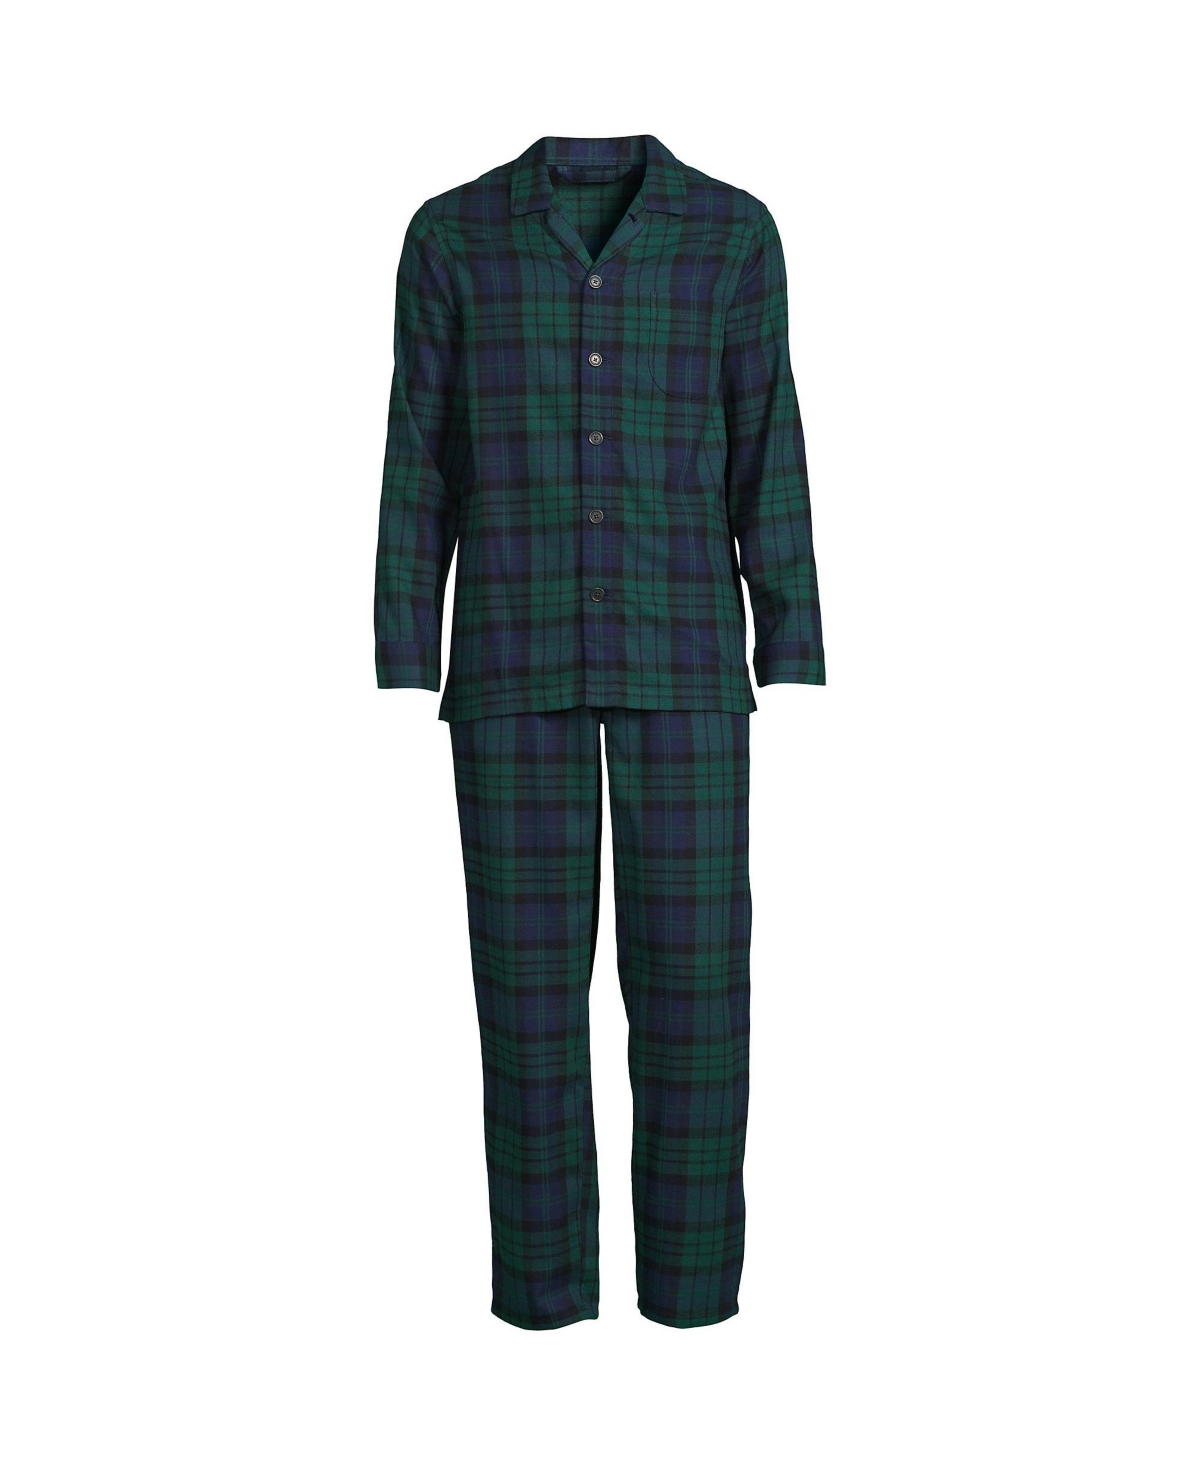 Lands' End Men's Flannel Pajama Set